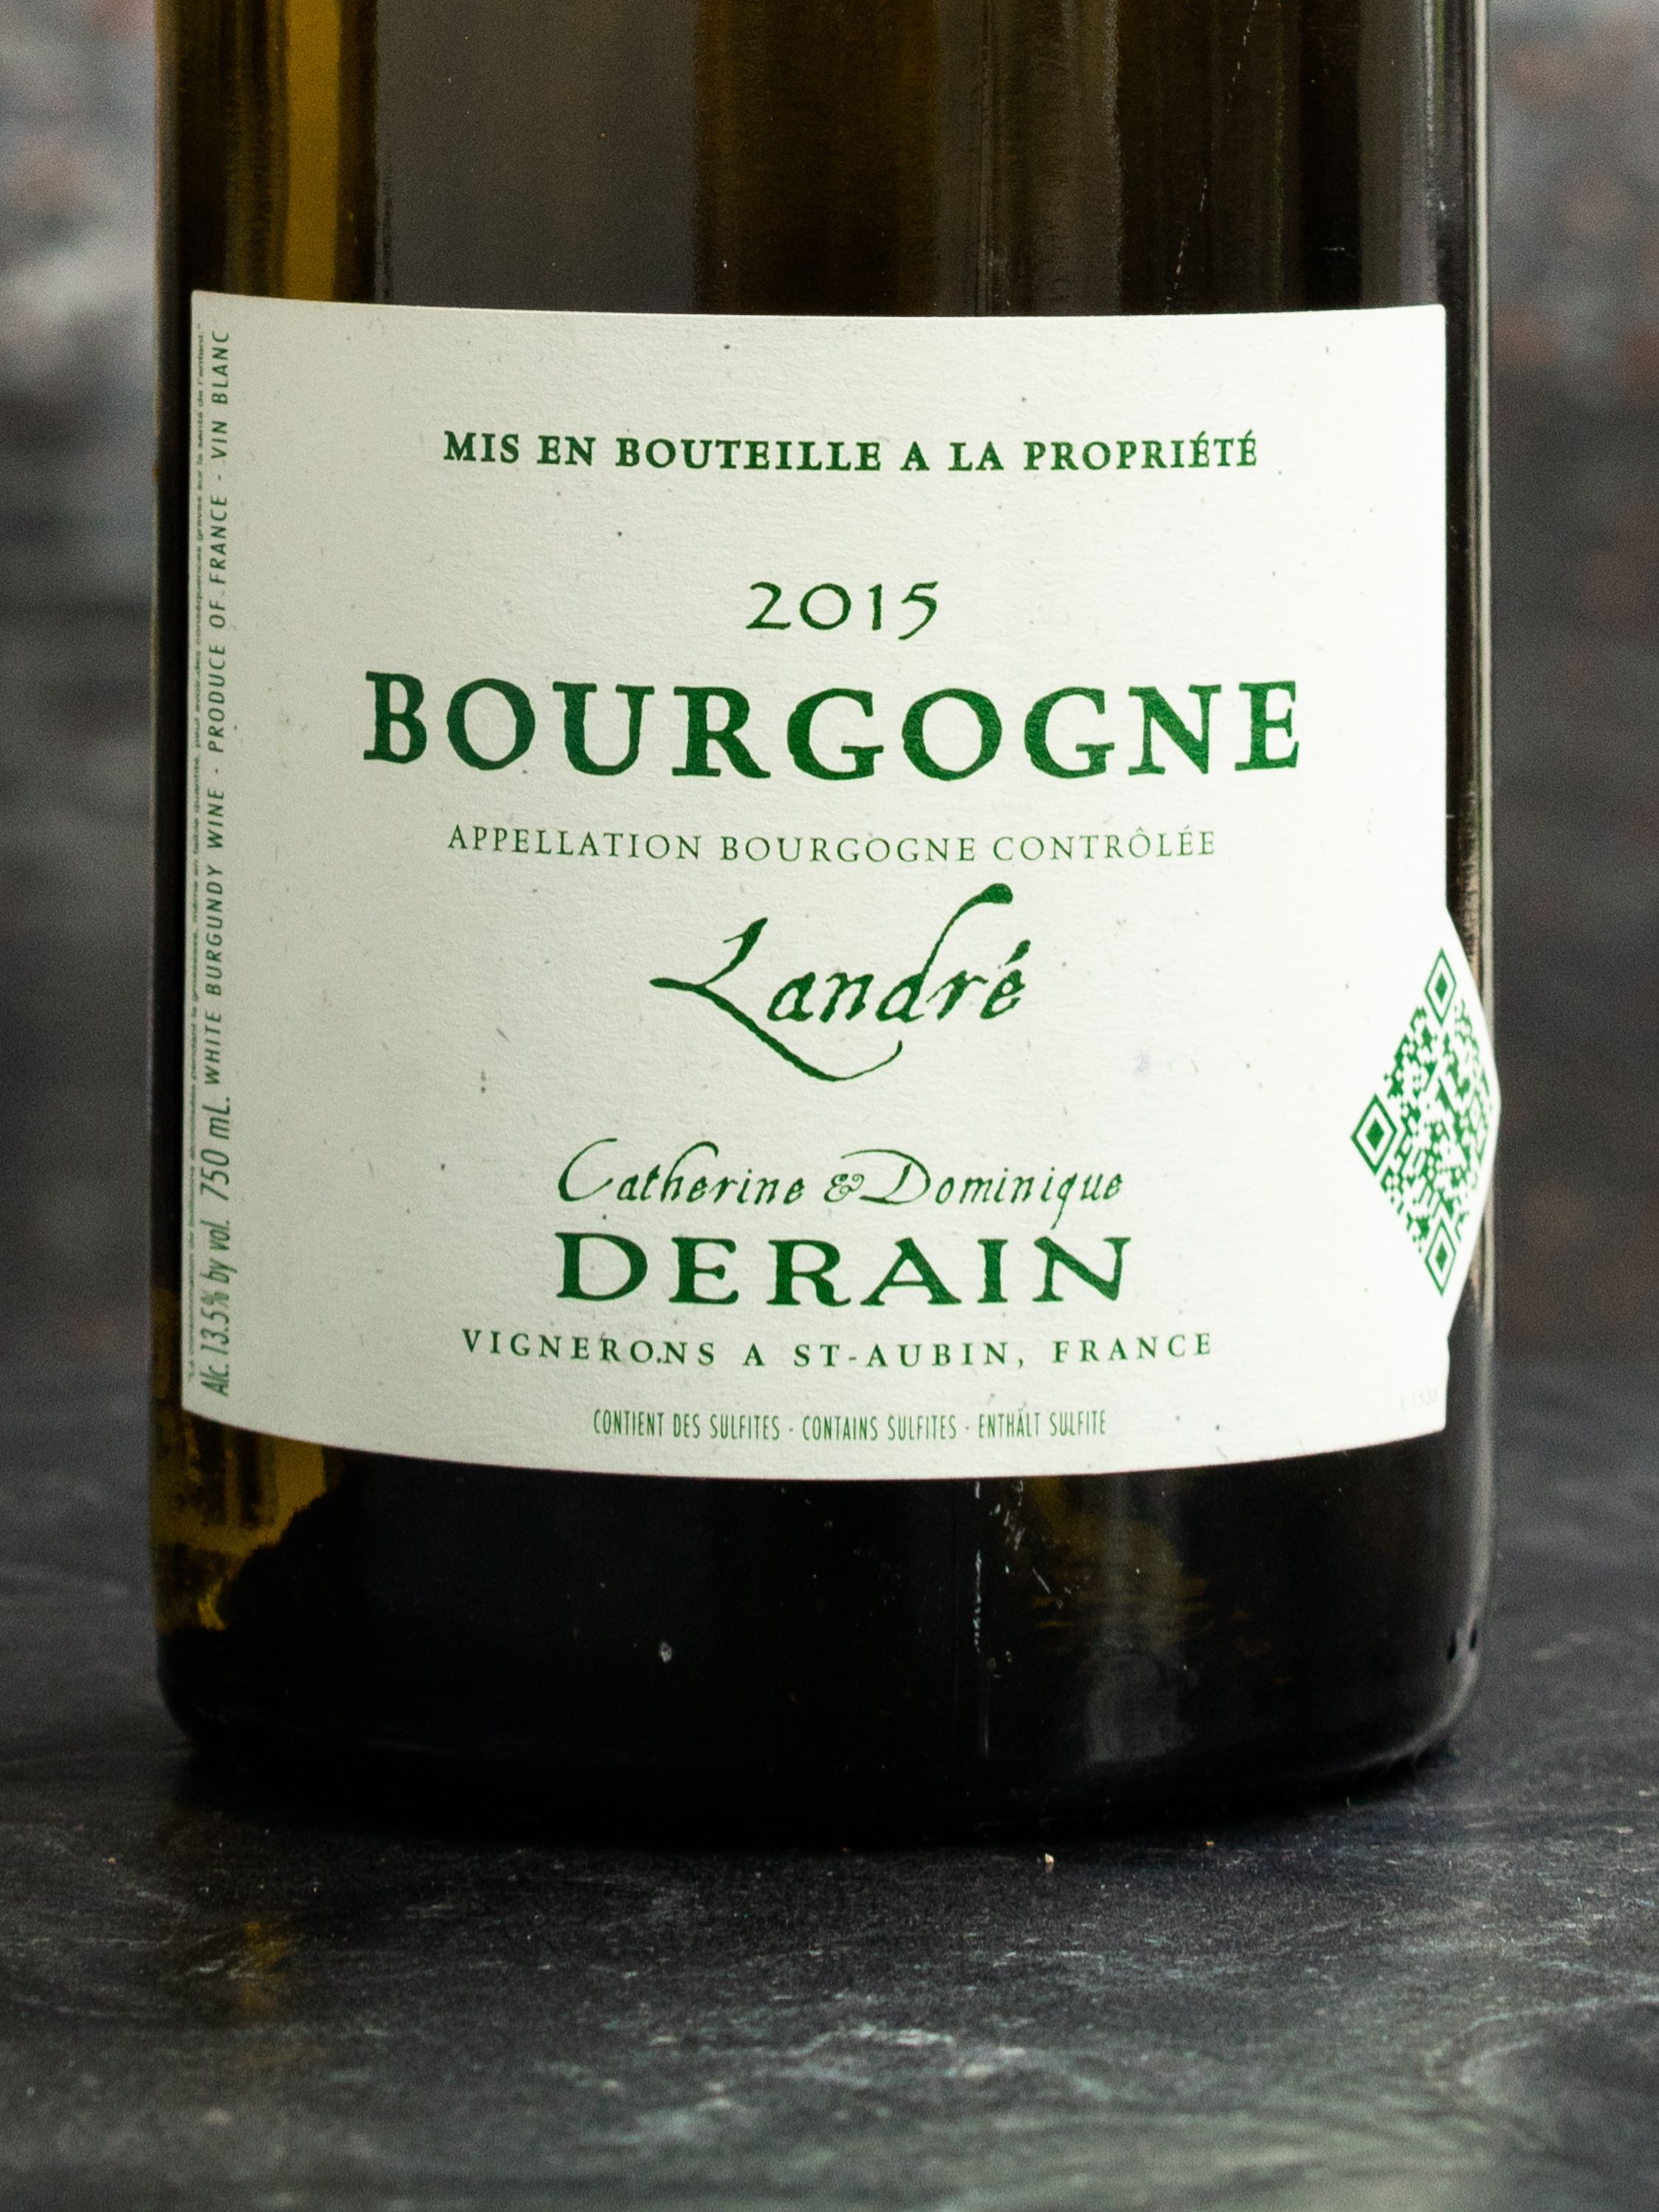 Вино Catherine & Dominique Derain Bourgogne Landre / Катрин и Доминик Дерэн Бургонь Ландре